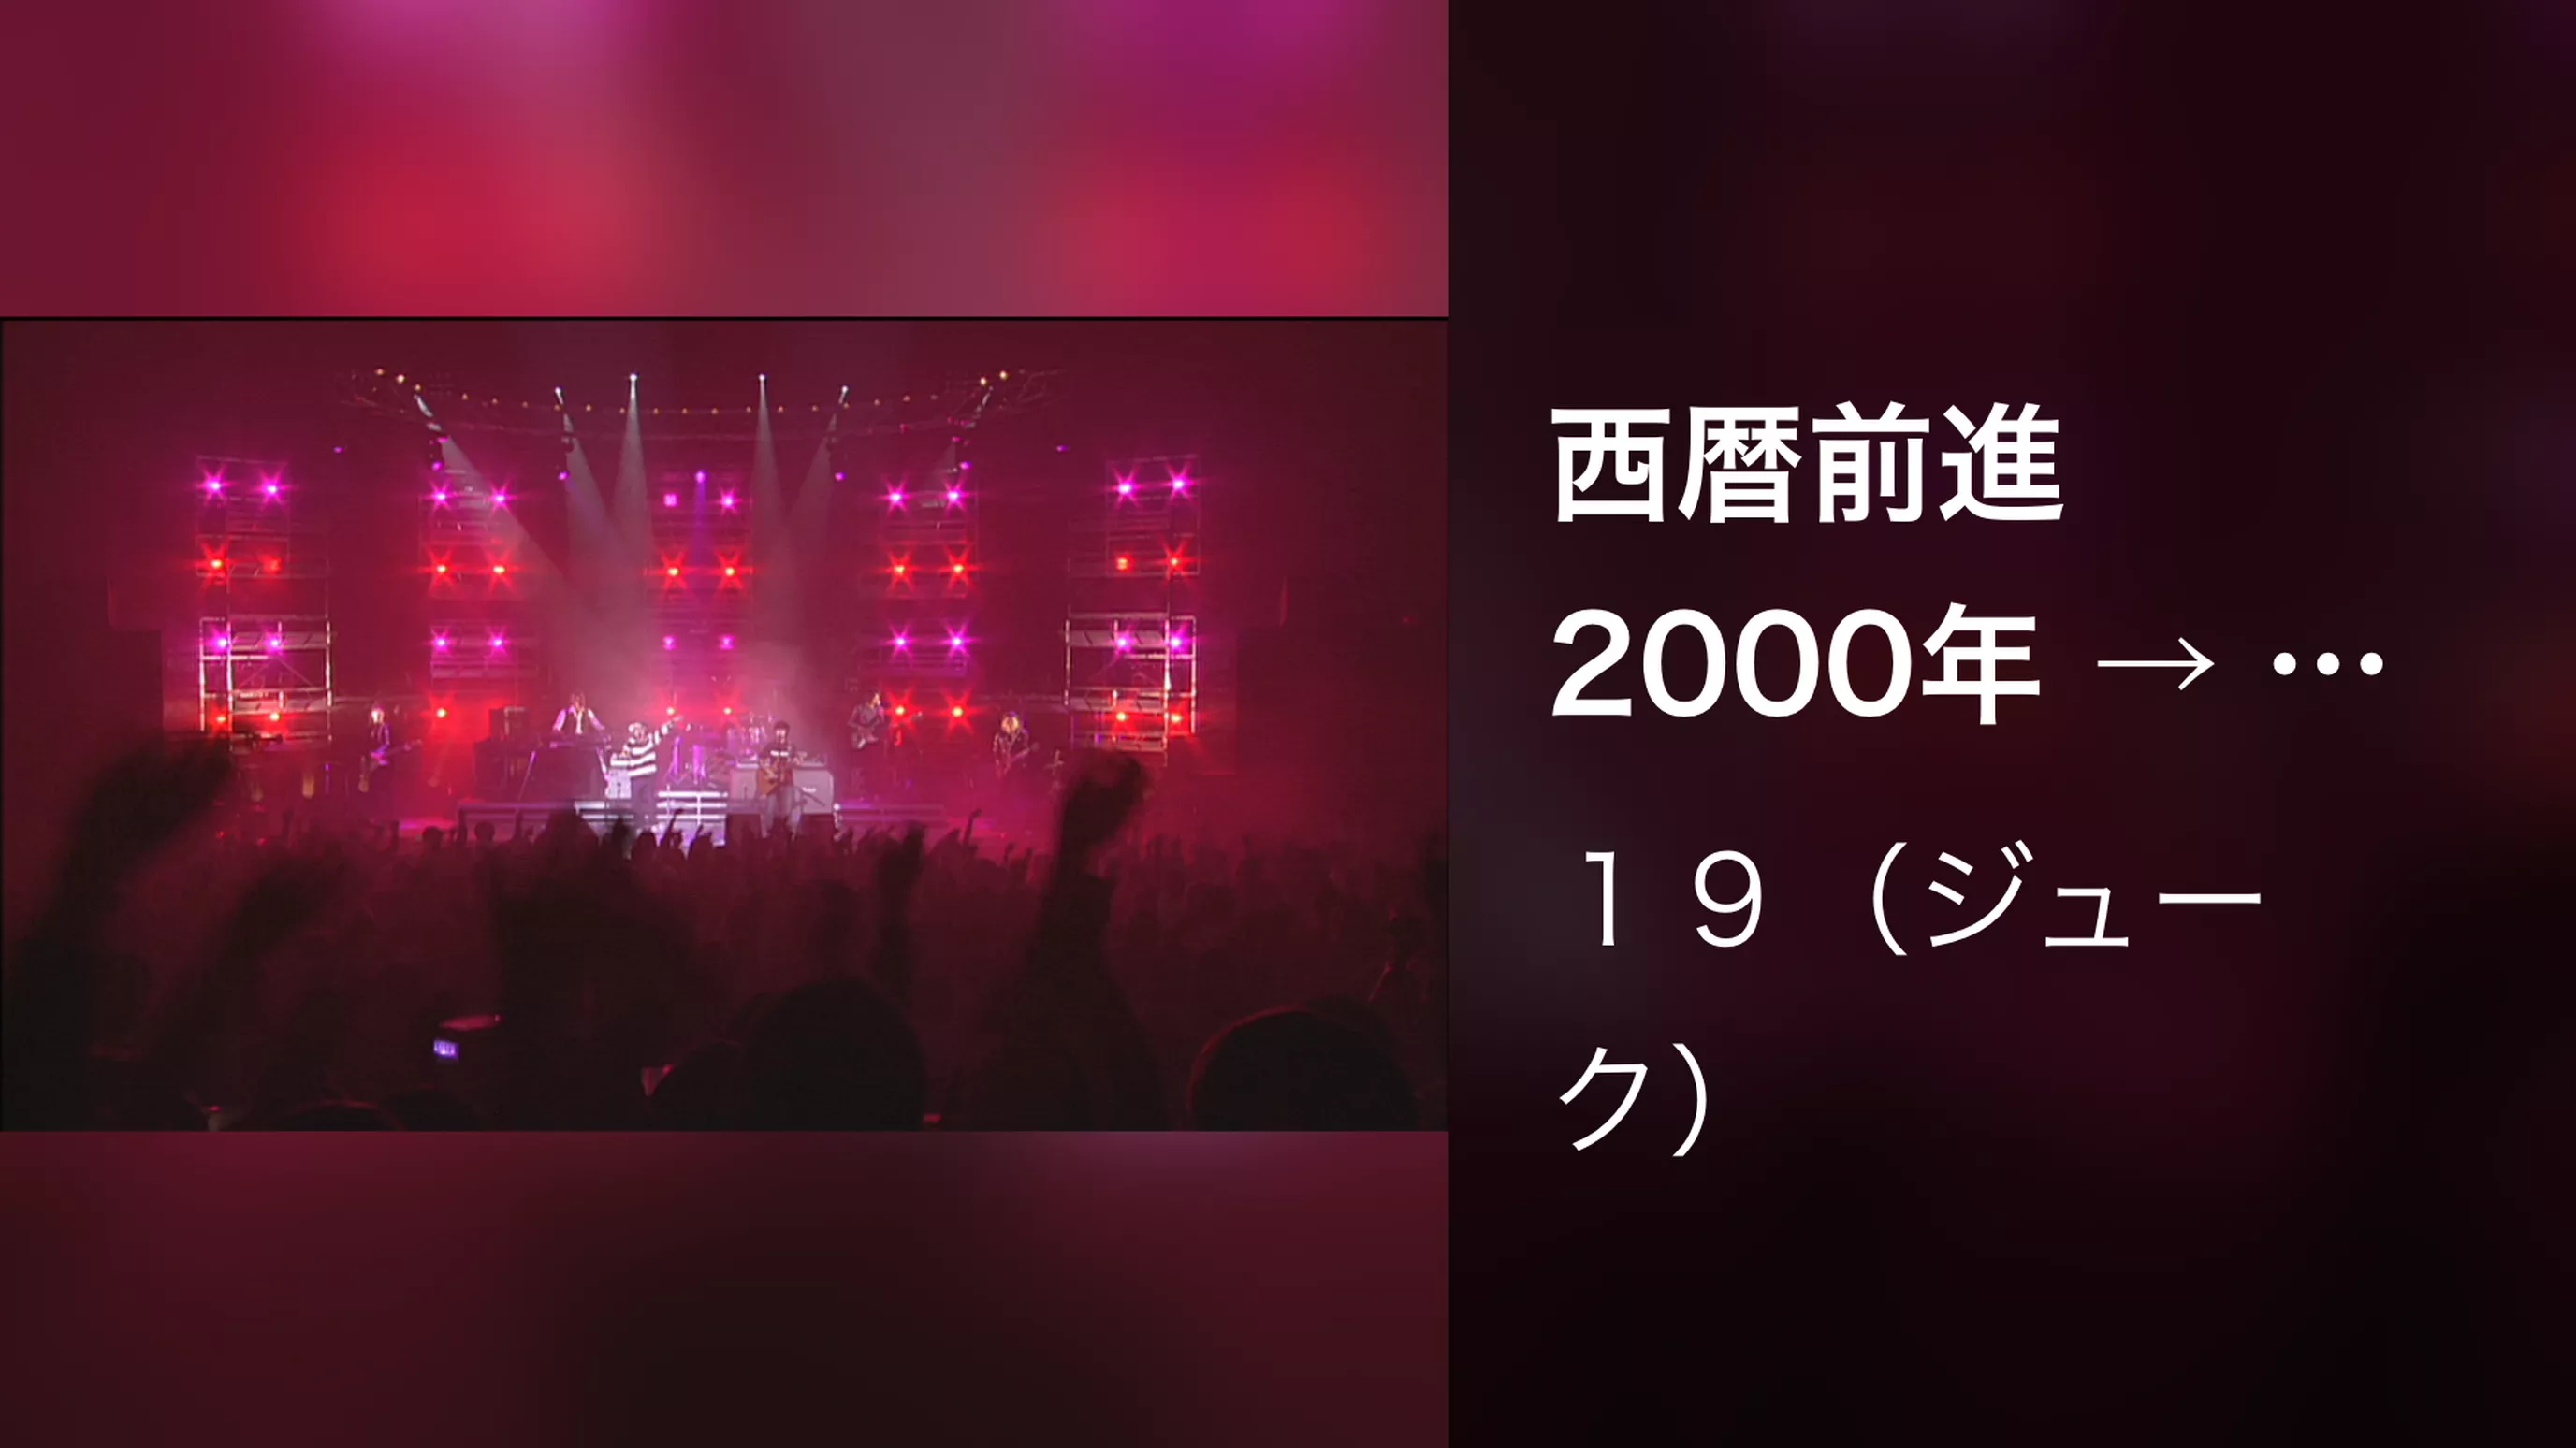 西暦前進 2000年 → （Live at 渋谷公会堂,2001.11.21）